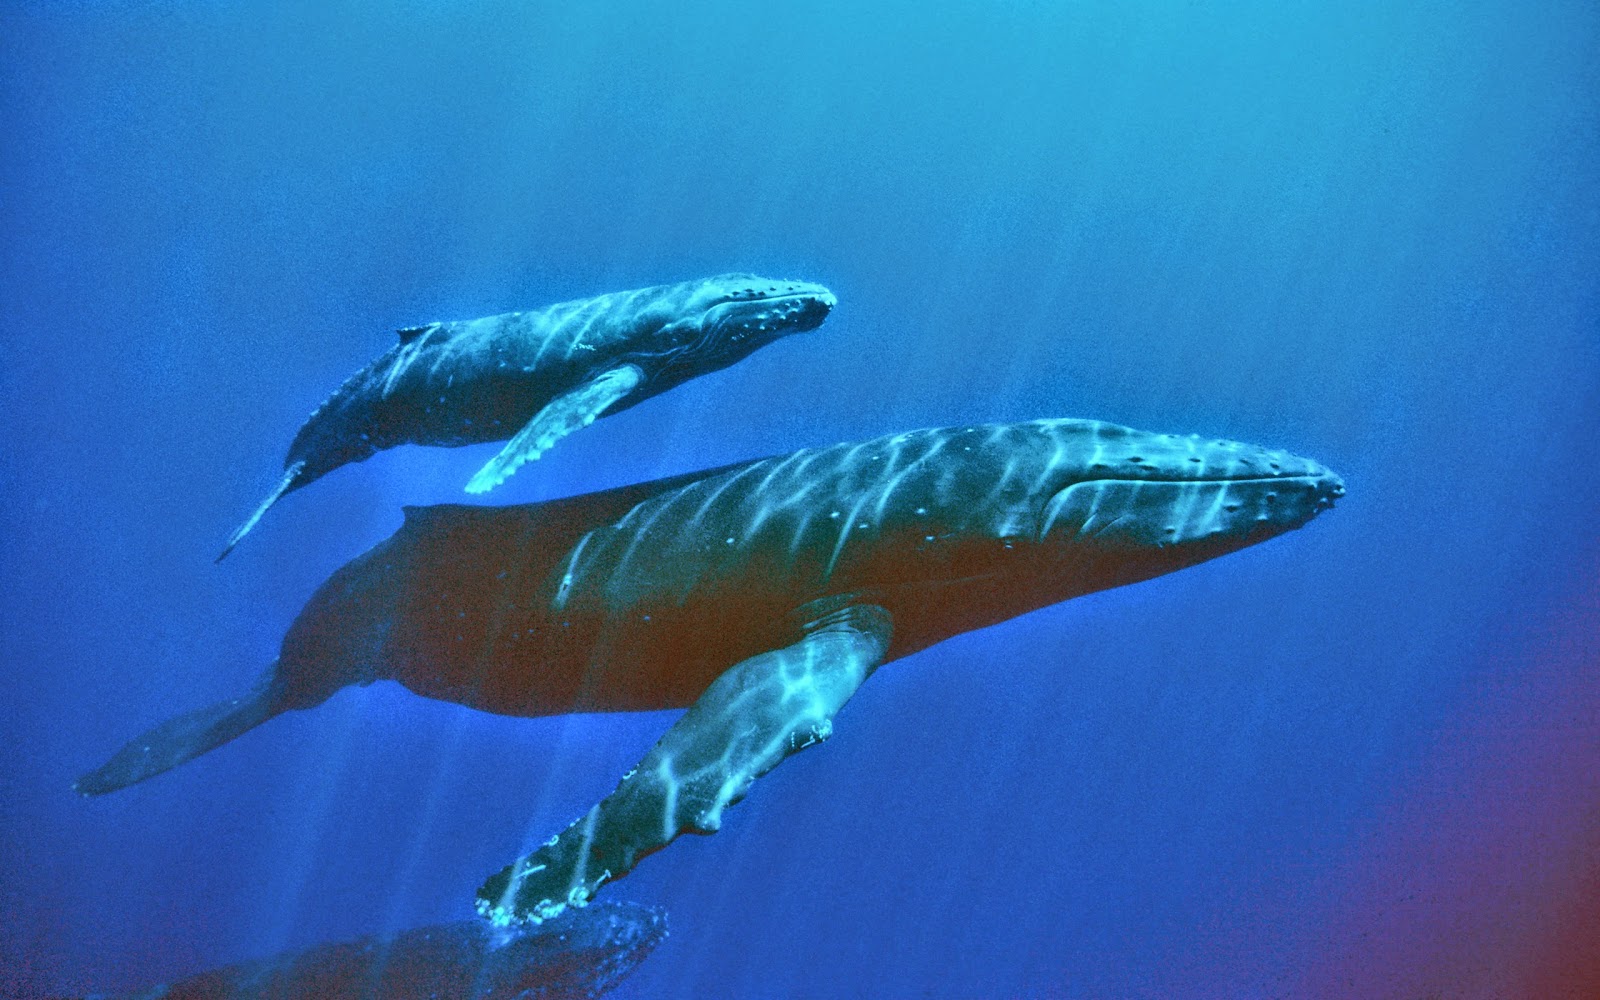 ballena azul fondos de pantalla hd,mamífero marino,biología marina,ballena jorobada,ballena,submarino